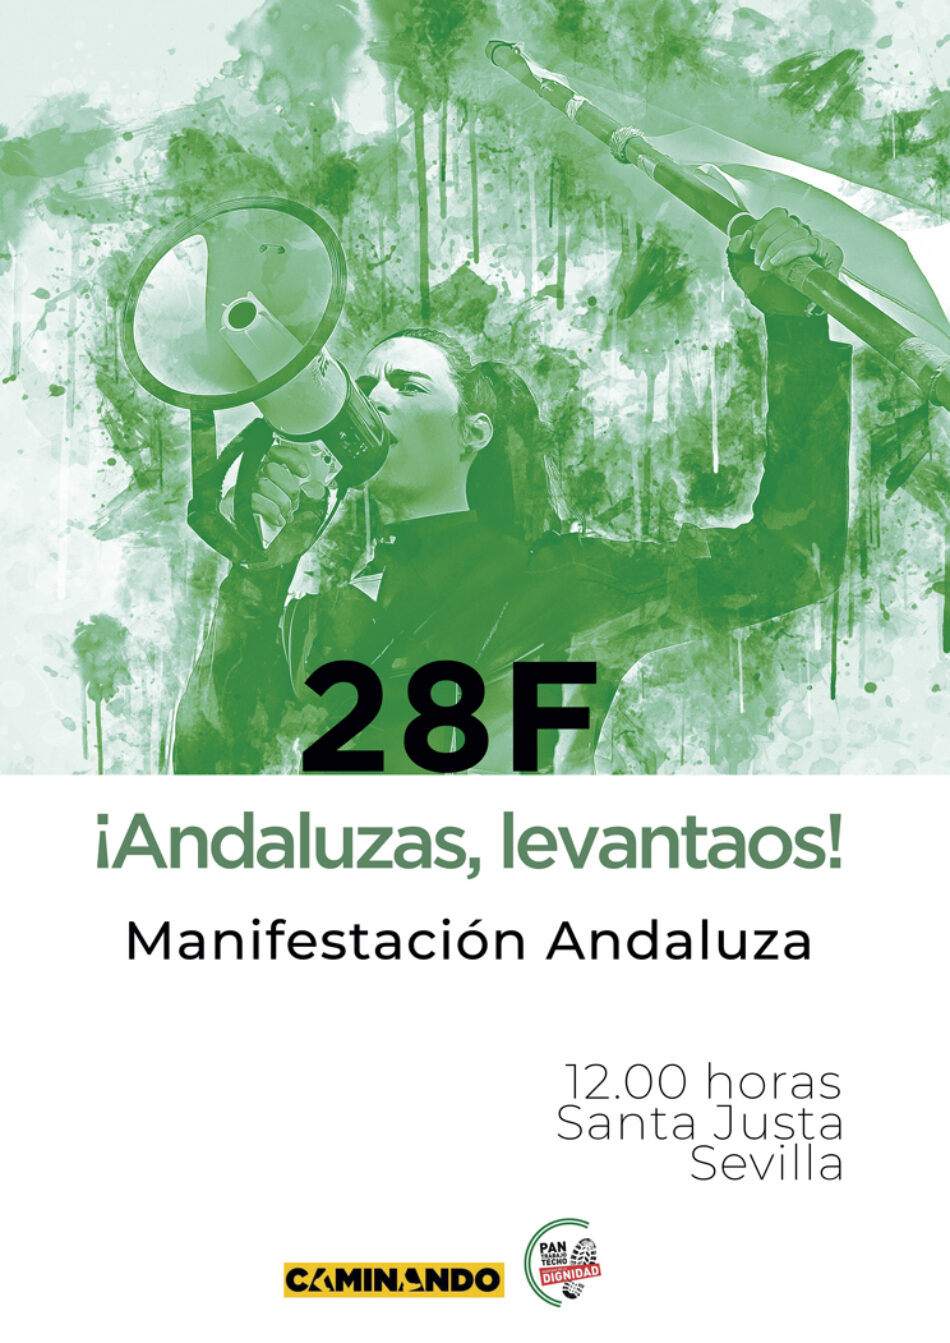 La Plataforma Caminando Andalucía convoca una gran manifestación andaluza el 28F